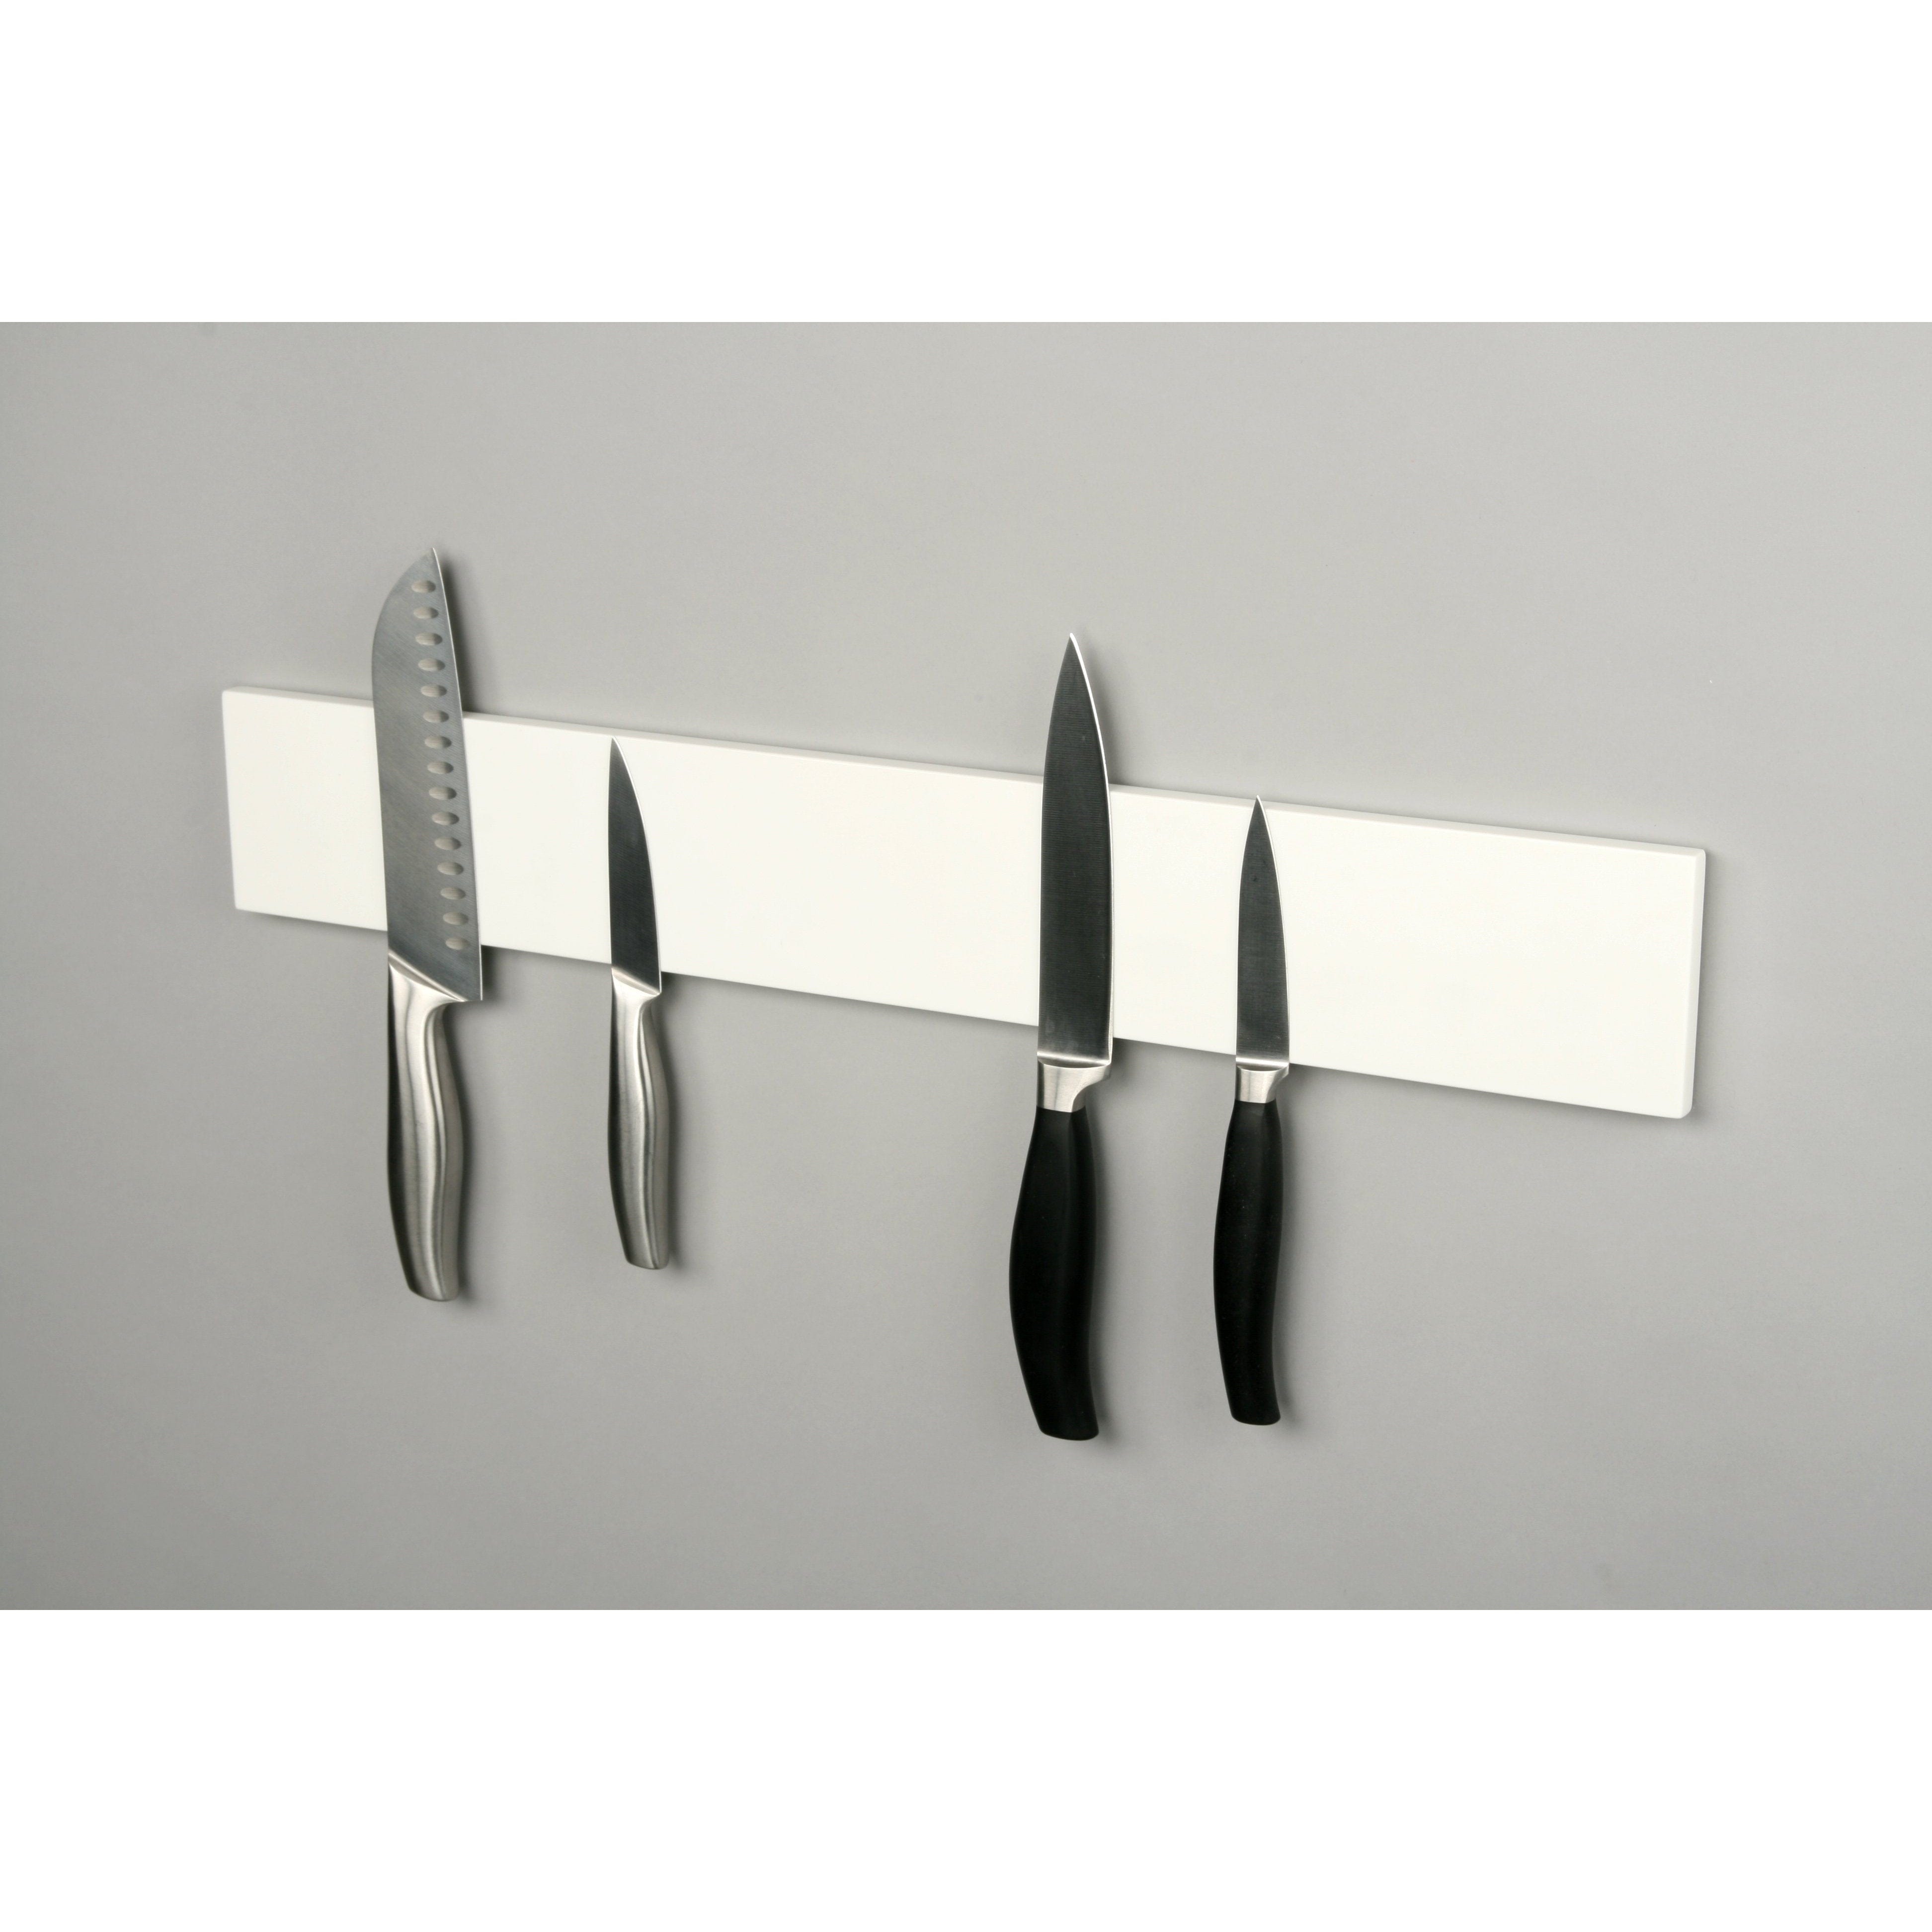 Lokalizační rovinky nůž strip bílý, 60 cm